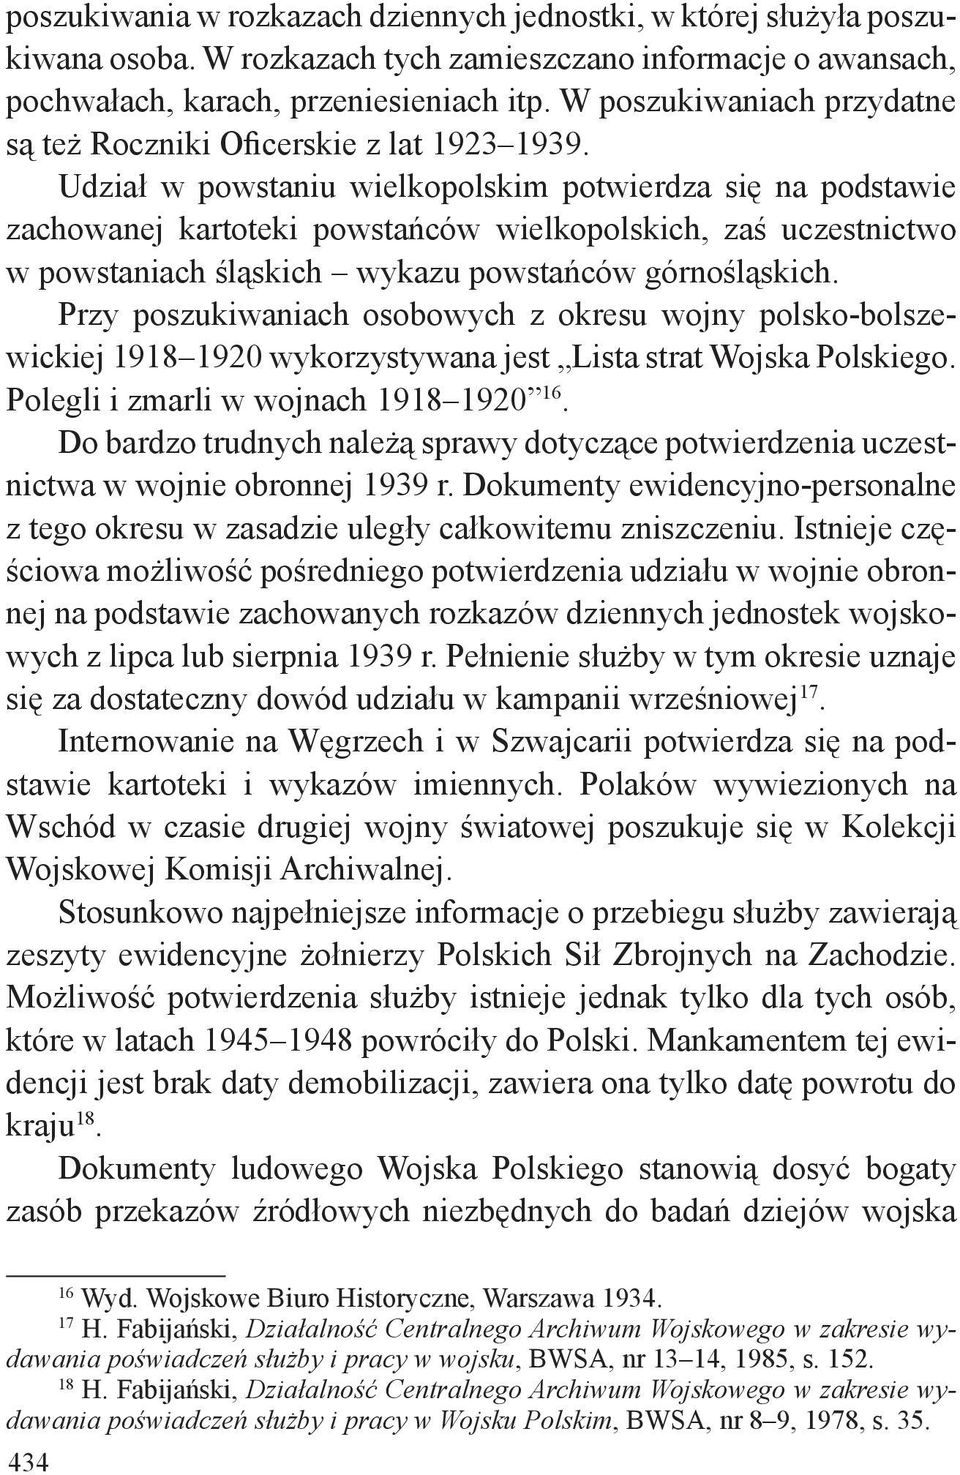 Udział w powstaniu wielkopolskim potwierdza się na podstawie zachowanej kartoteki powstańców wielkopolskich, zaś uczestnictwo w powstaniach śląskich wykazu powstańców górnośląskich.